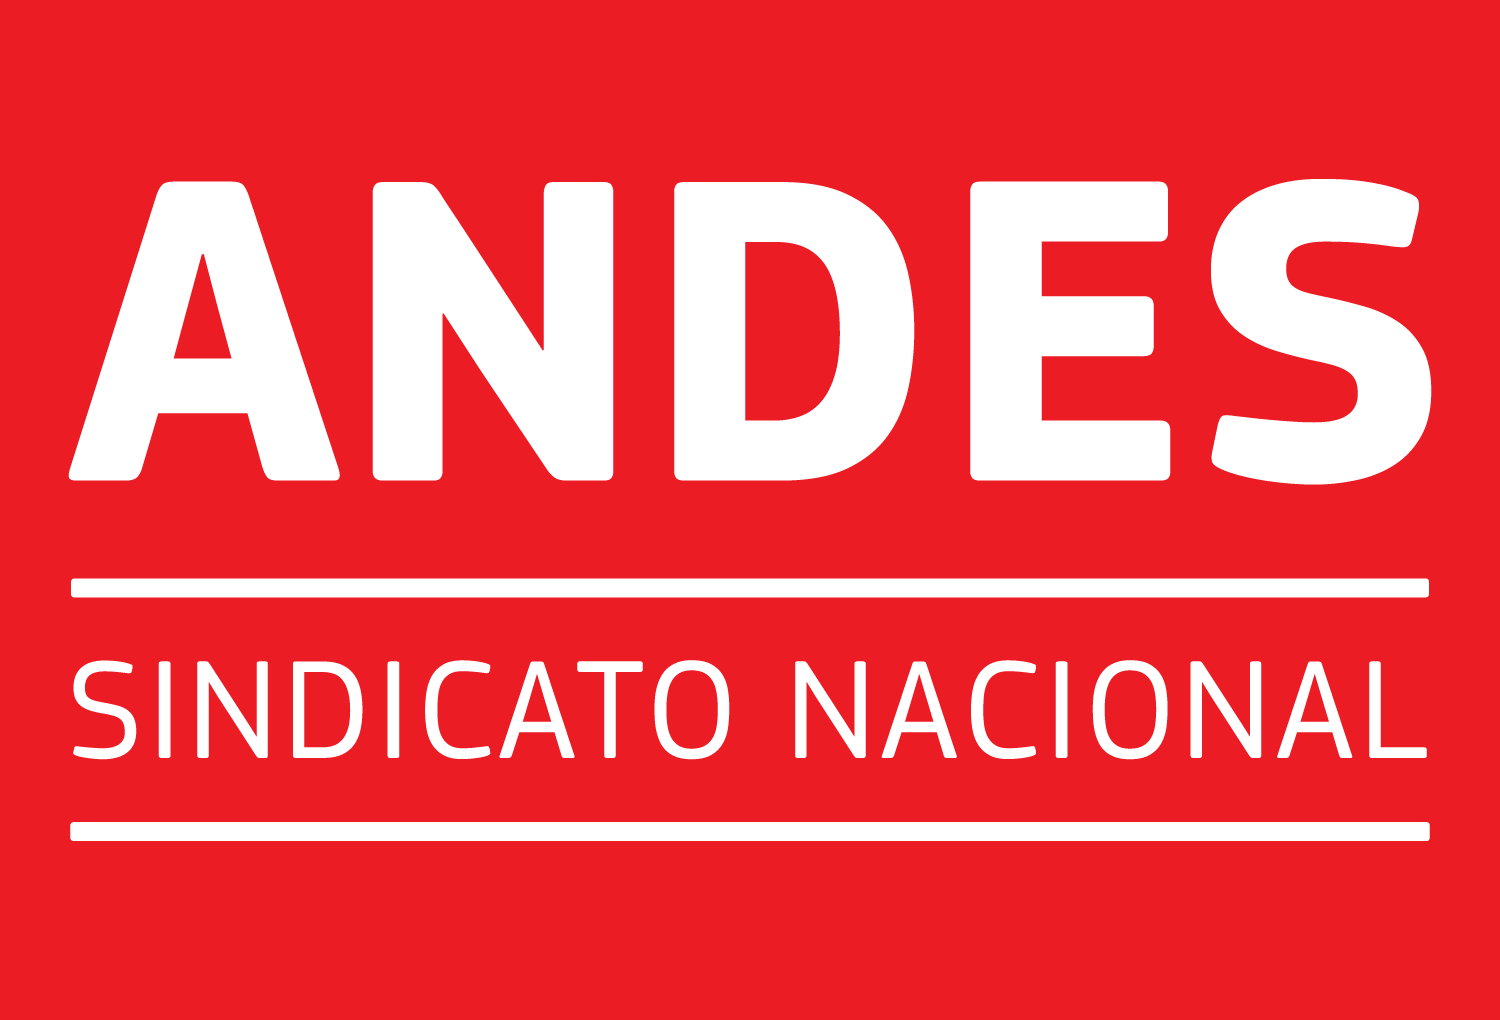 Andes Sindicato Nacional